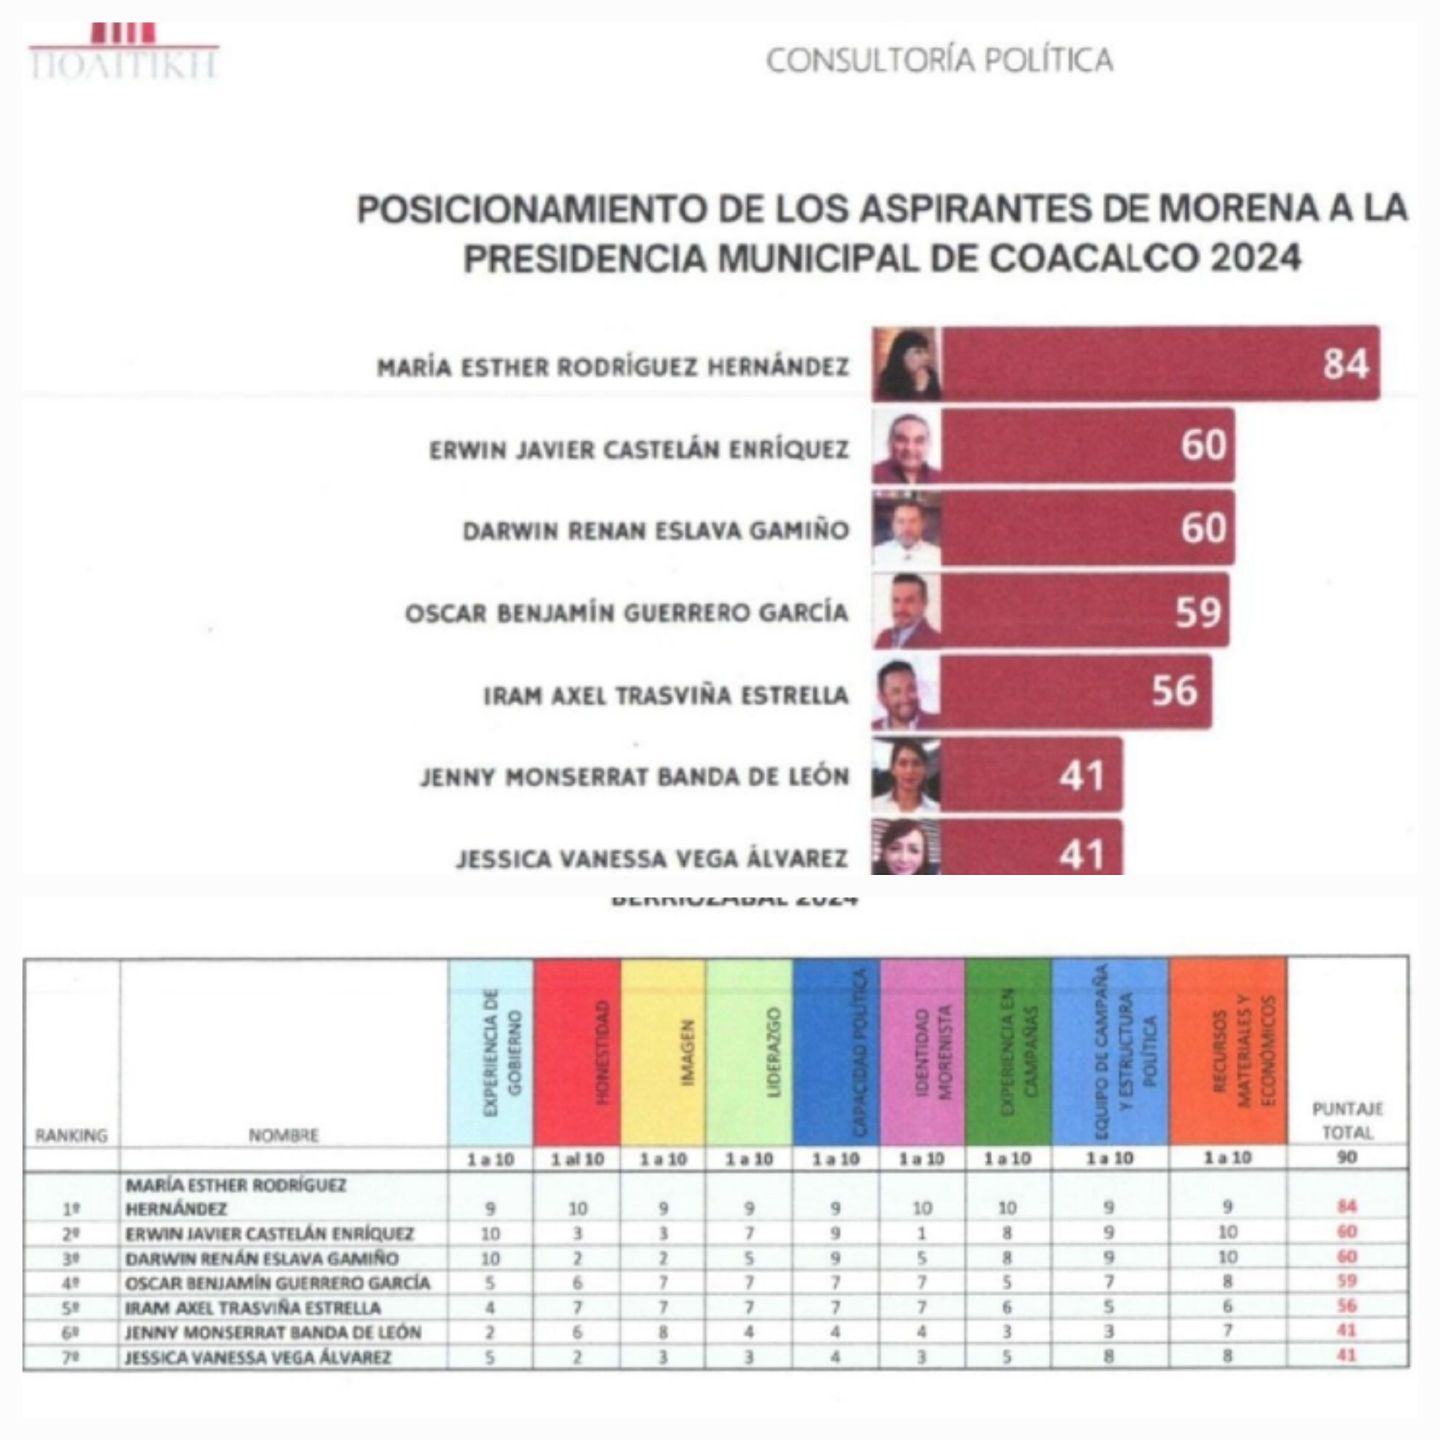 María Esther Rodríguez encabeza las
encuestas para la candidatura de Morena